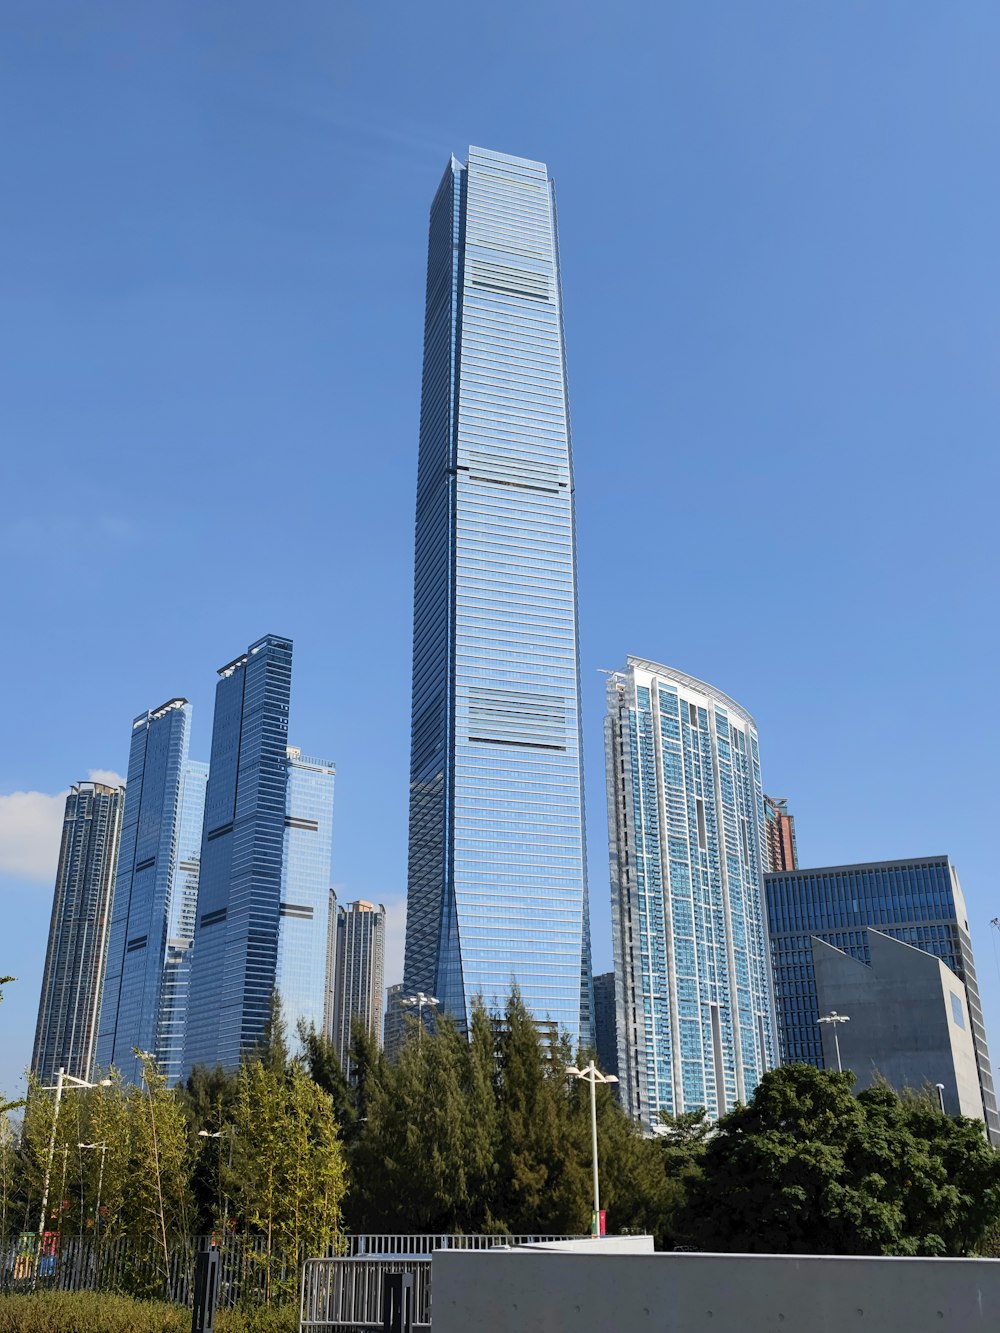 고층 건물로 가득 찬 도시 위로 우뚝 솟은 고층 건물